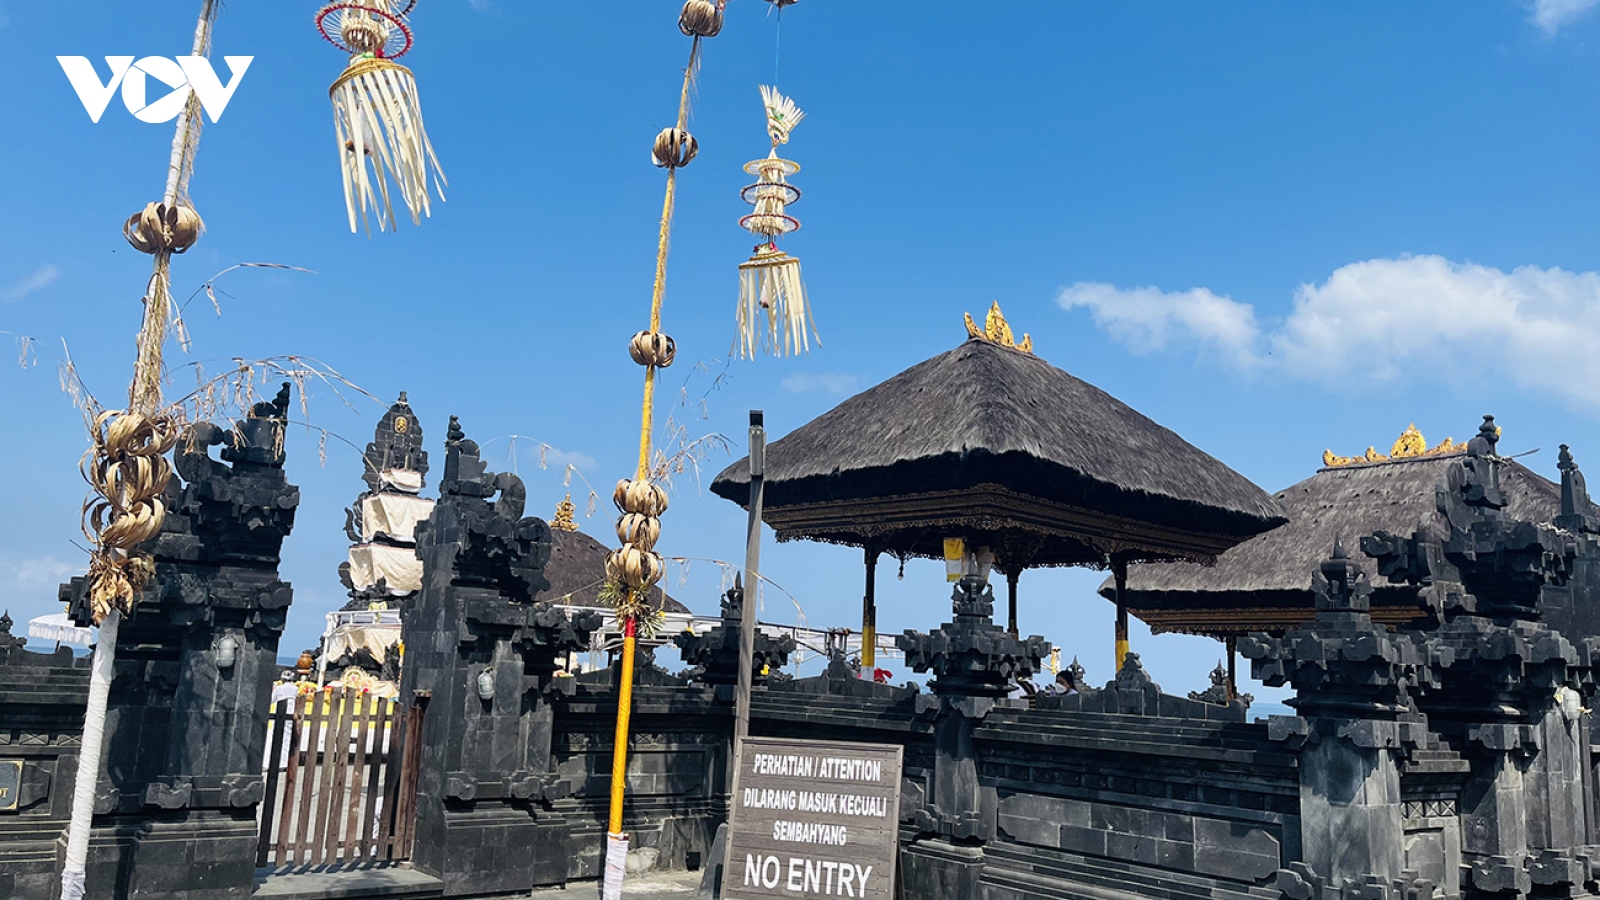 Du khách chú ý “Ngày im lặng” tại Bali để tránh bị trục xuất